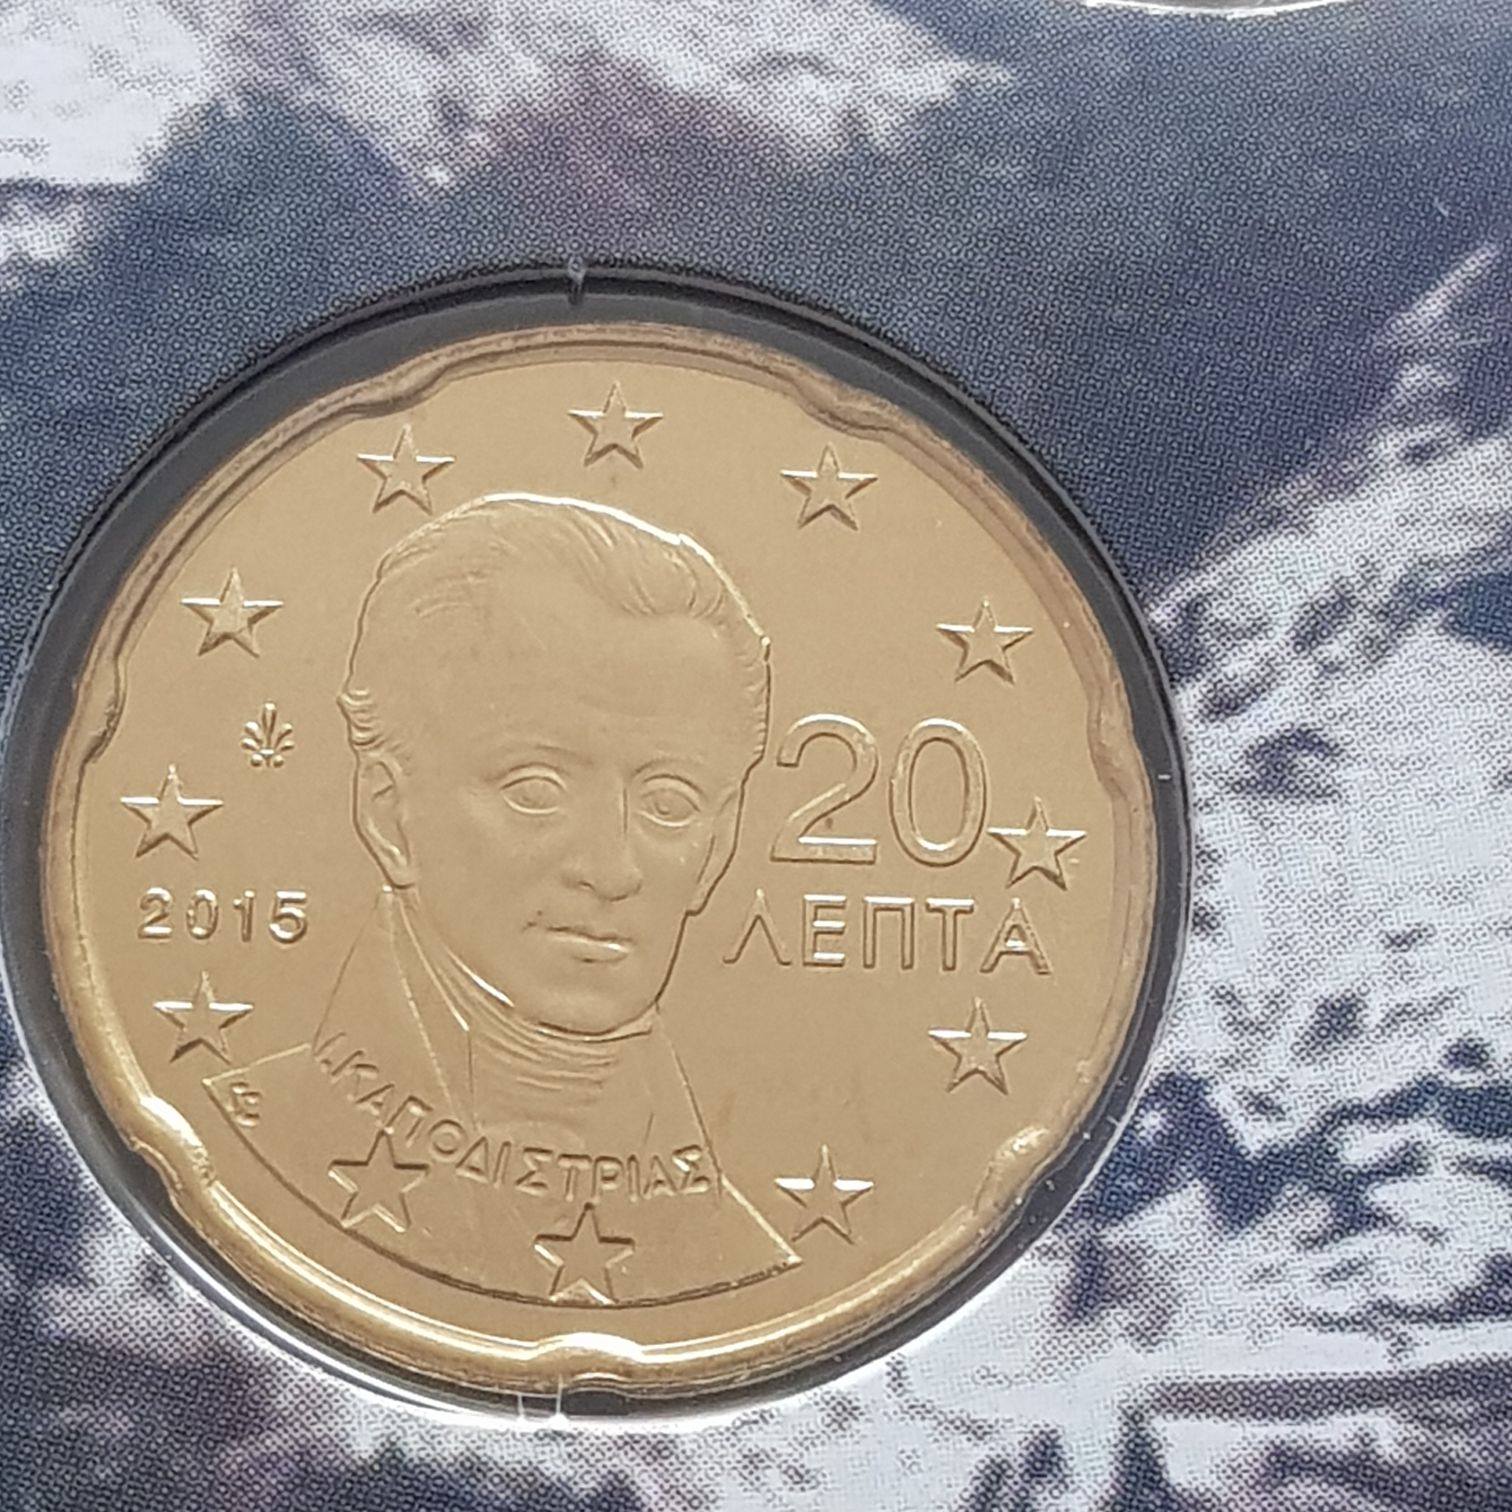 .2 Centavos De Euro  coin collectible - Main Image 2